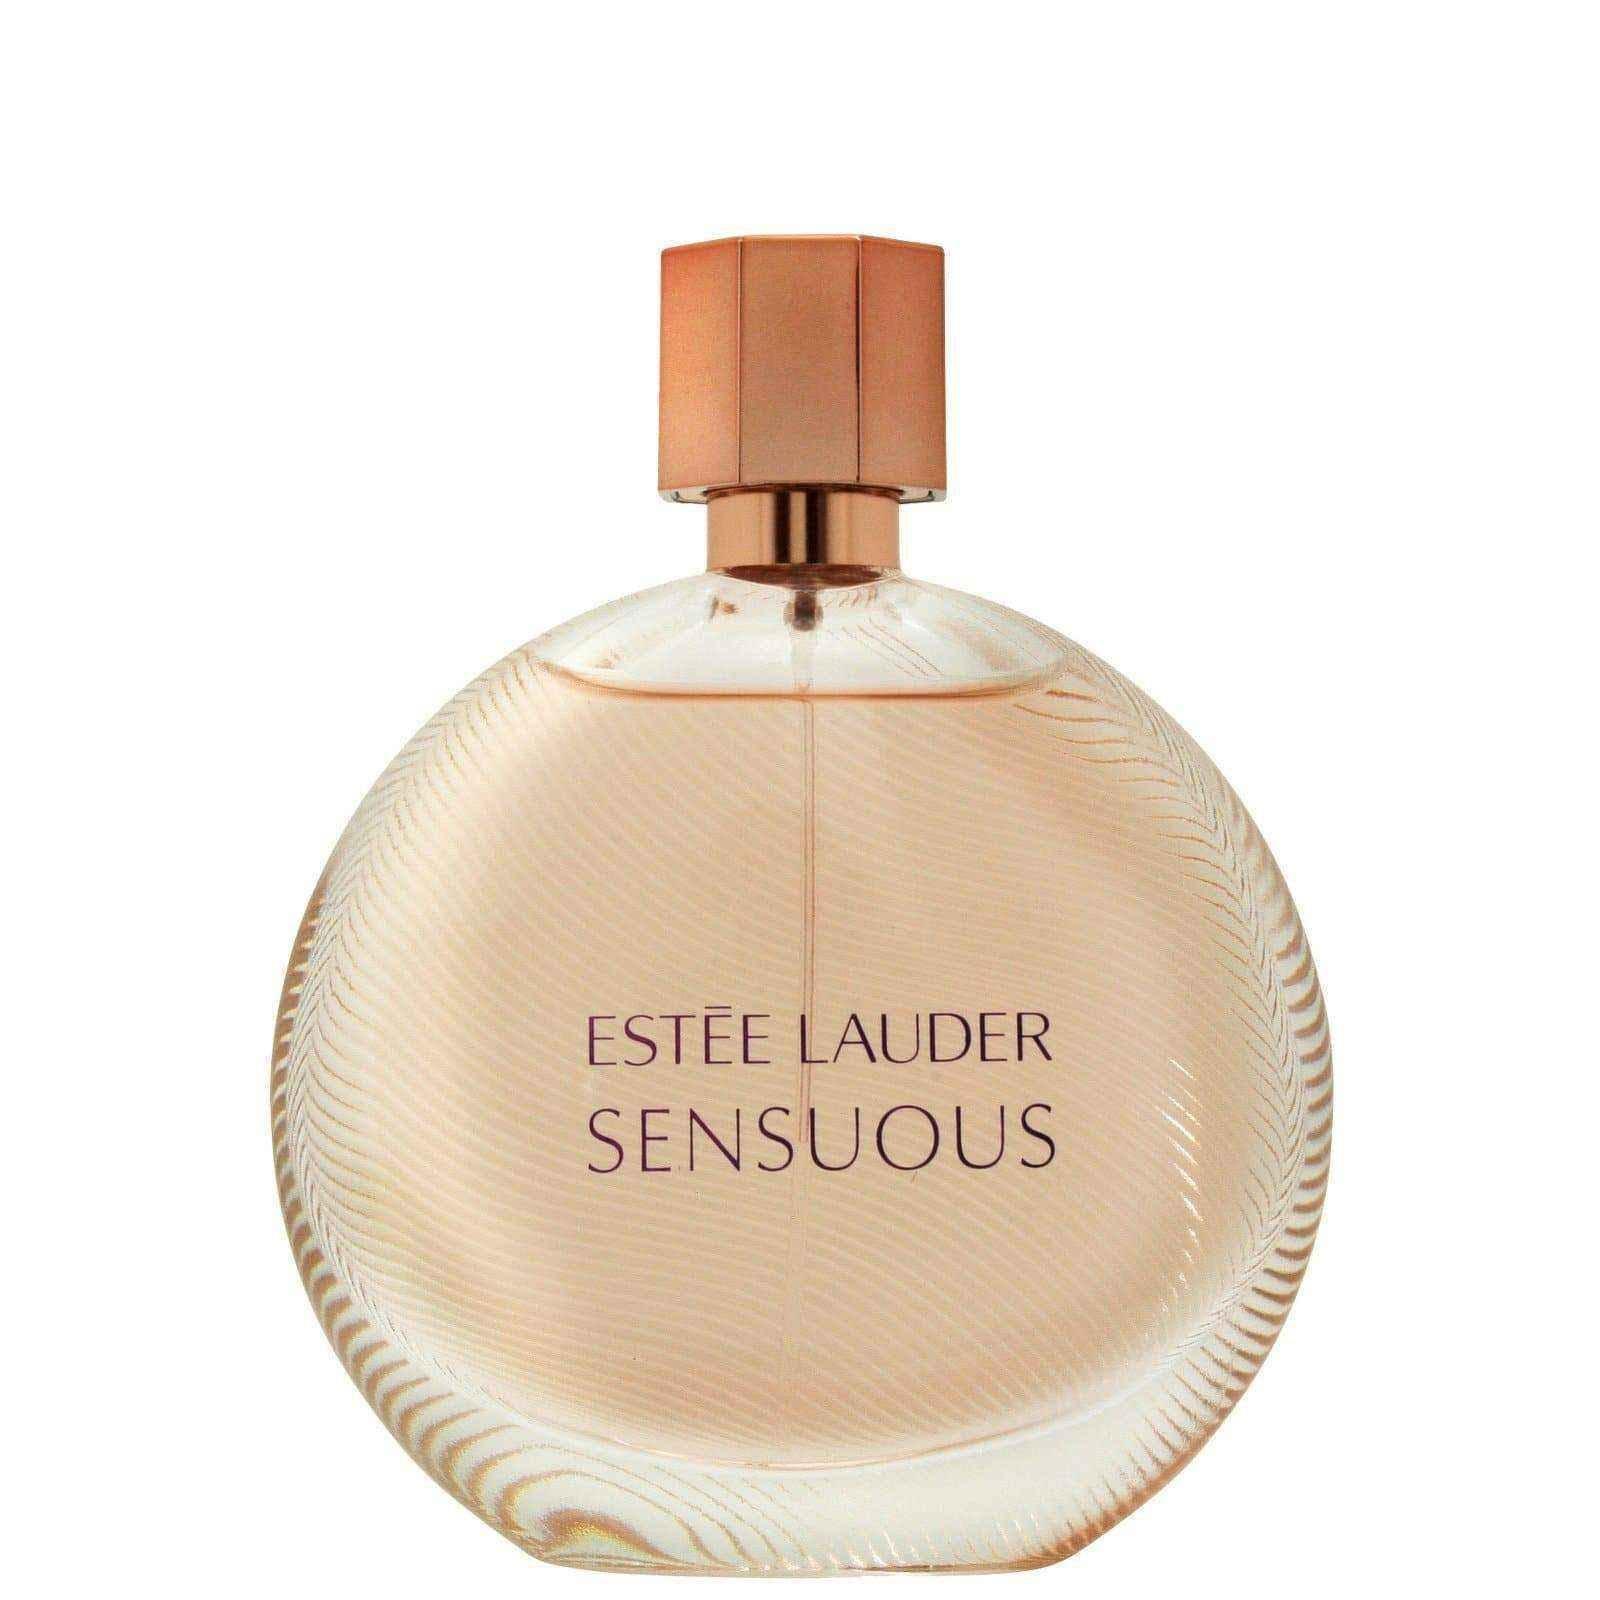 Estee Lauder Sensuous Eau de Parfum 50ml Spray UK